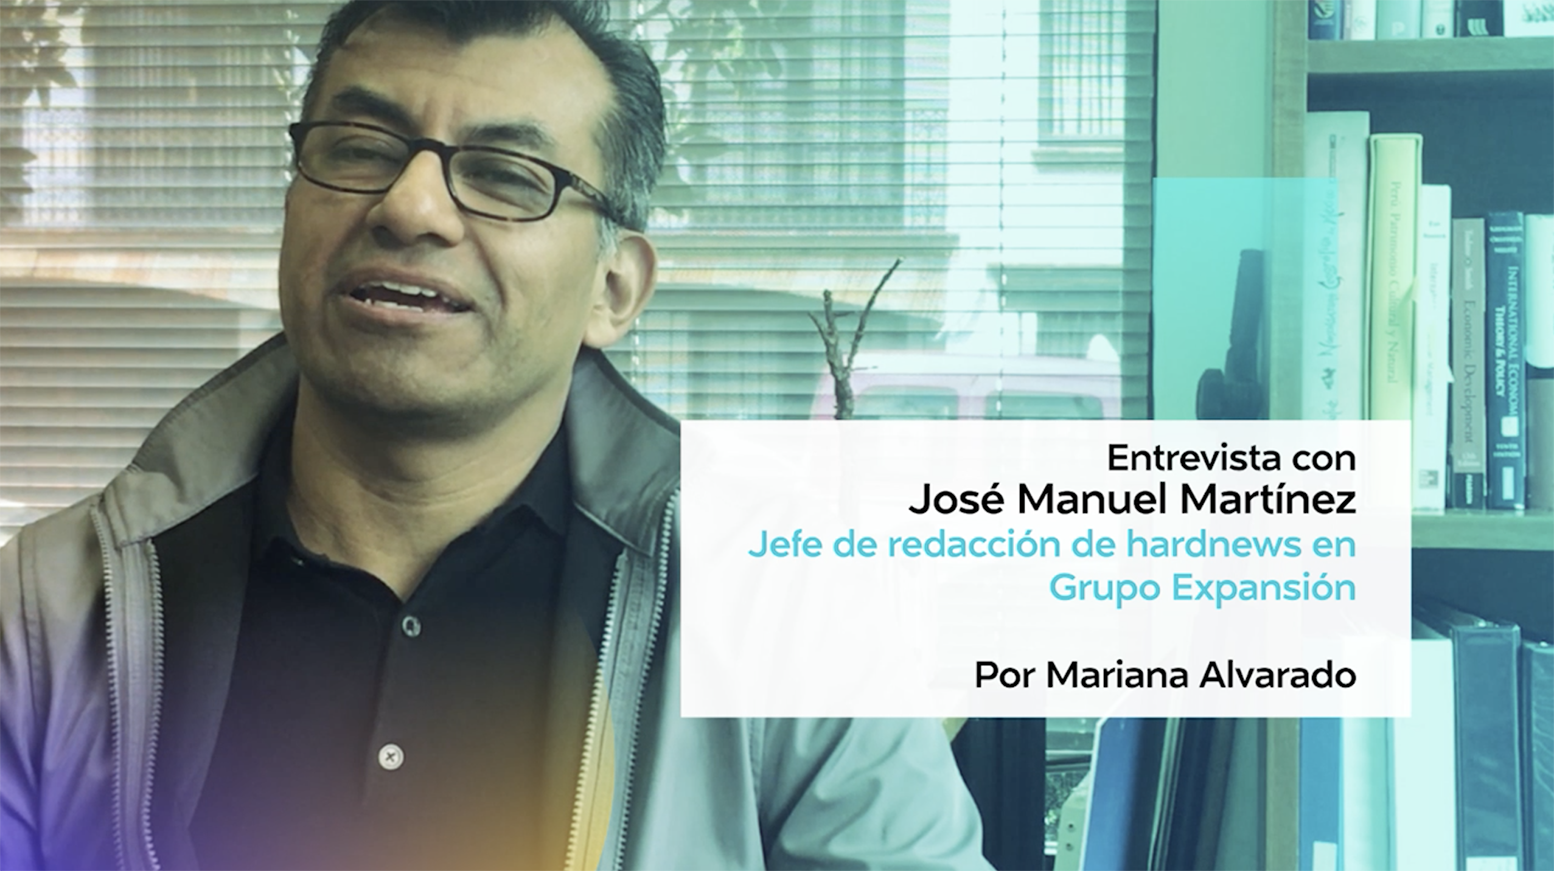 La agenda de contenido multiplataforma, entrevista con José Manuel Martínez